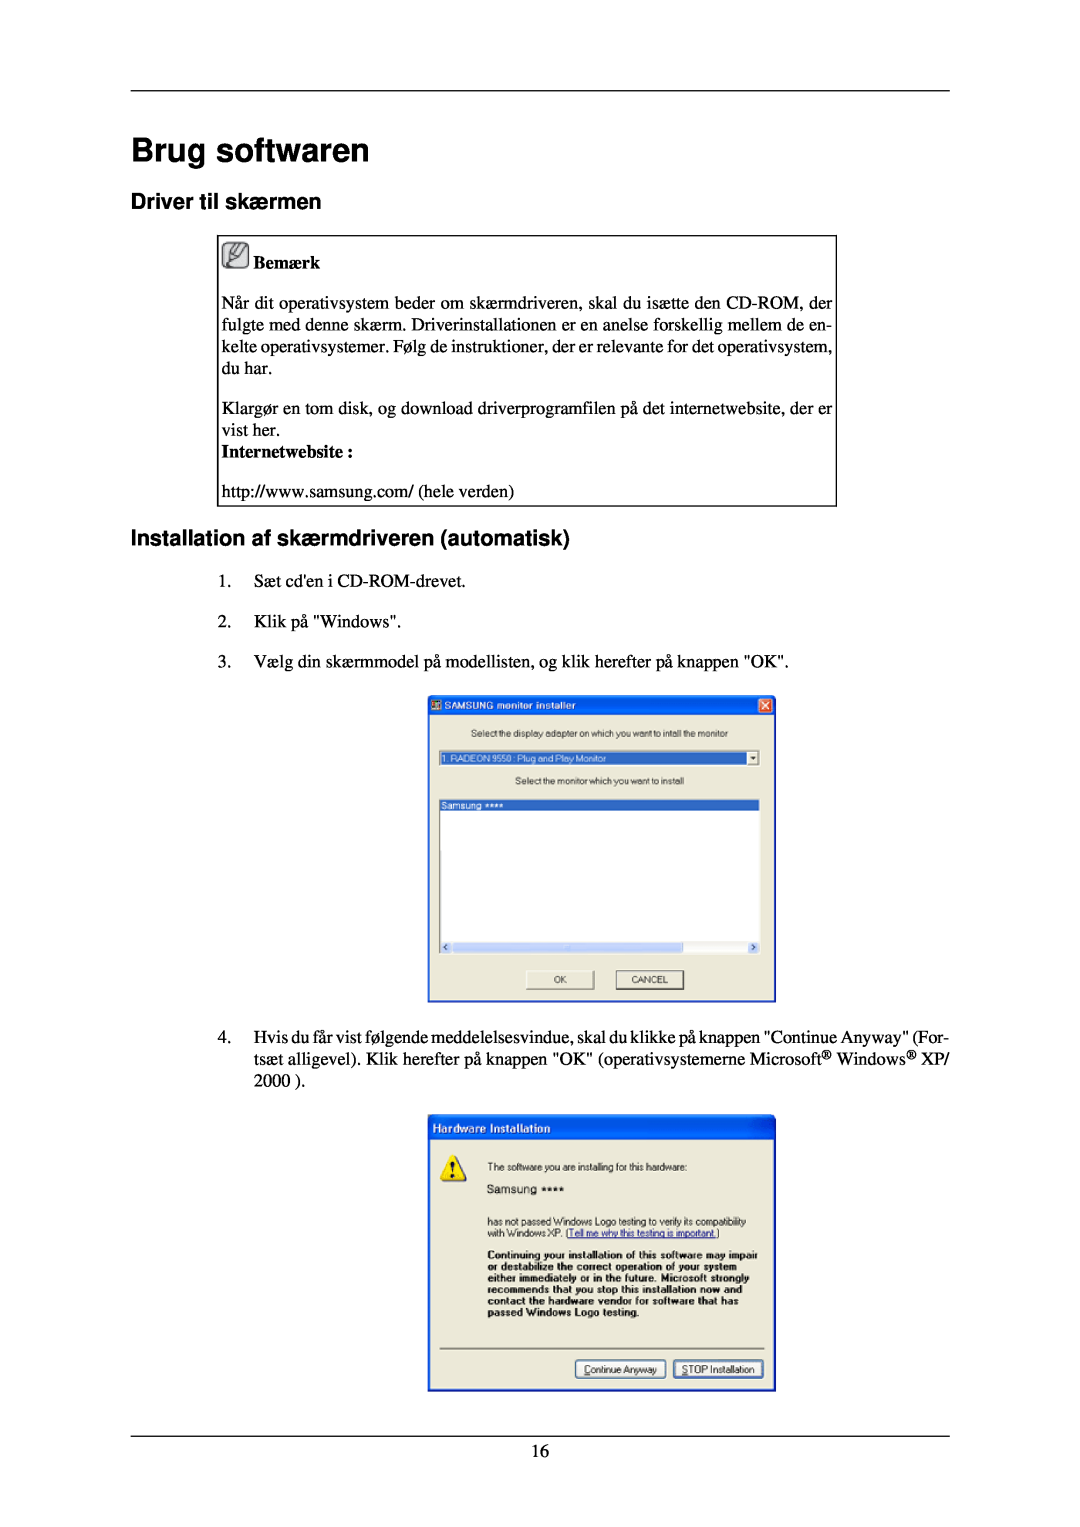 Samsung LS24CMKKFV/EN manual Brug softwaren, Driver til skærmen, Installation af skærmdriveren automatisk 